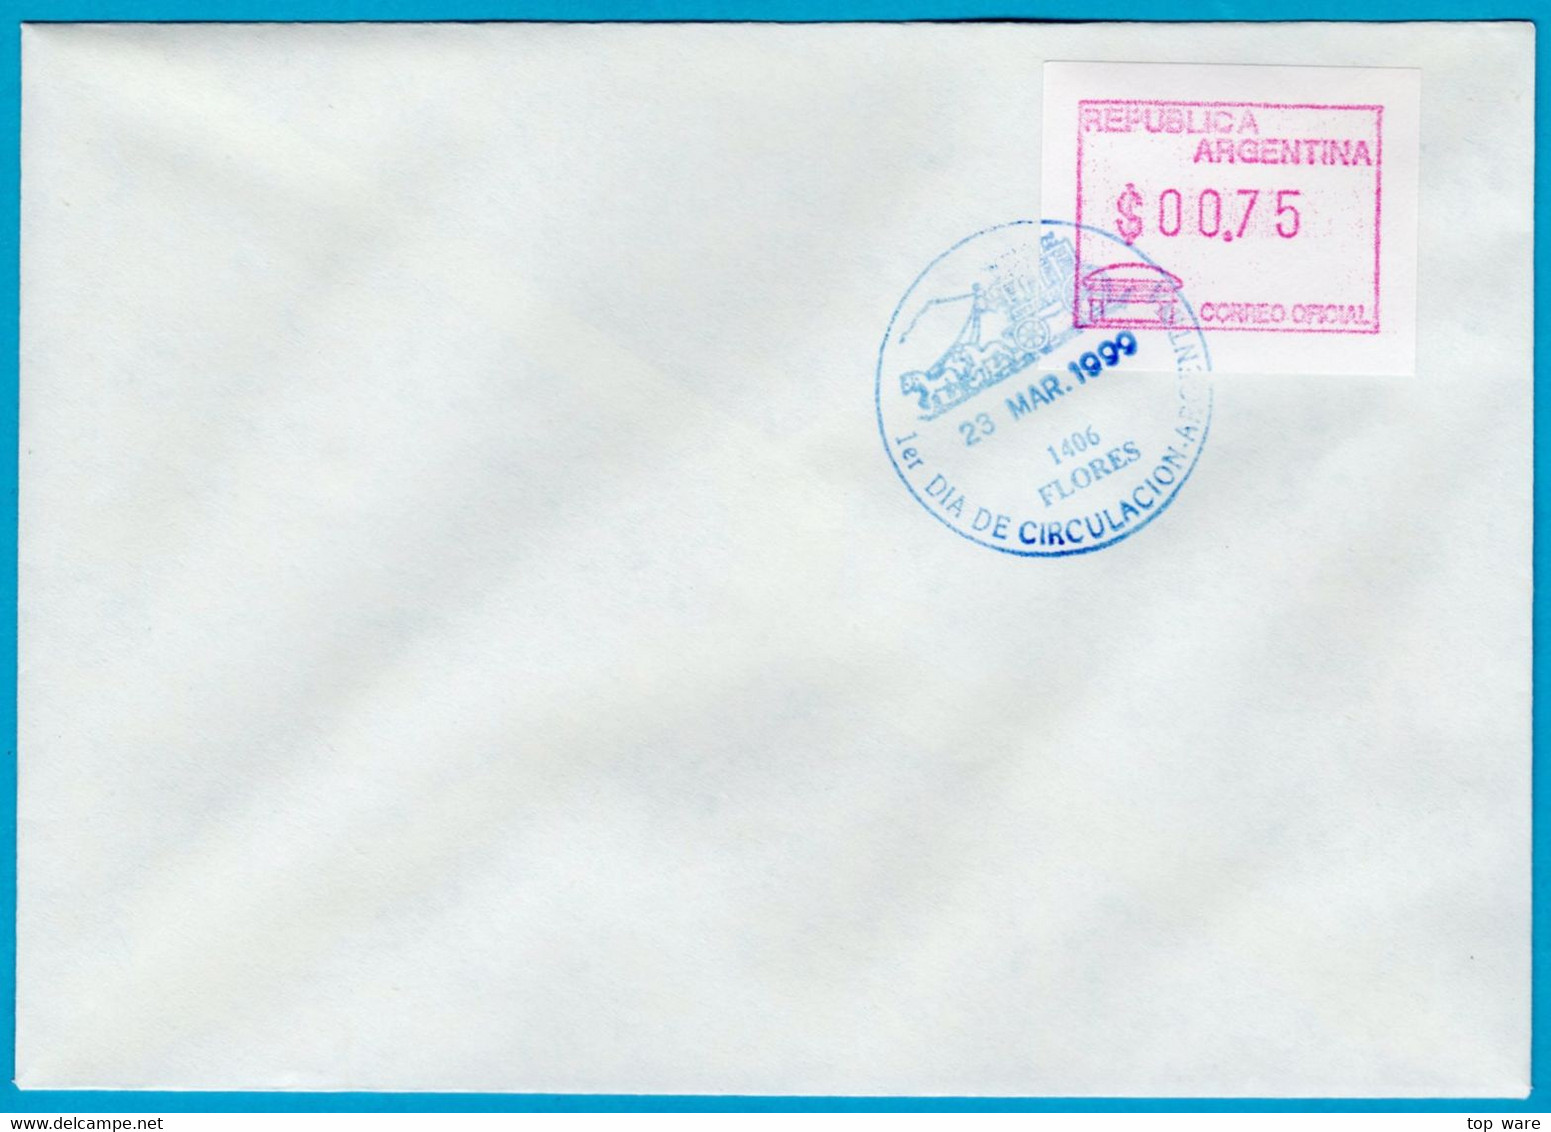 1999 Argentinien Argentina ATM 3 / $0,75 On FDC 23 MAR.1999 / FRAMA Automatenmarken Etiquetas Klüssendorf - Vignettes D'affranchissement (Frama)